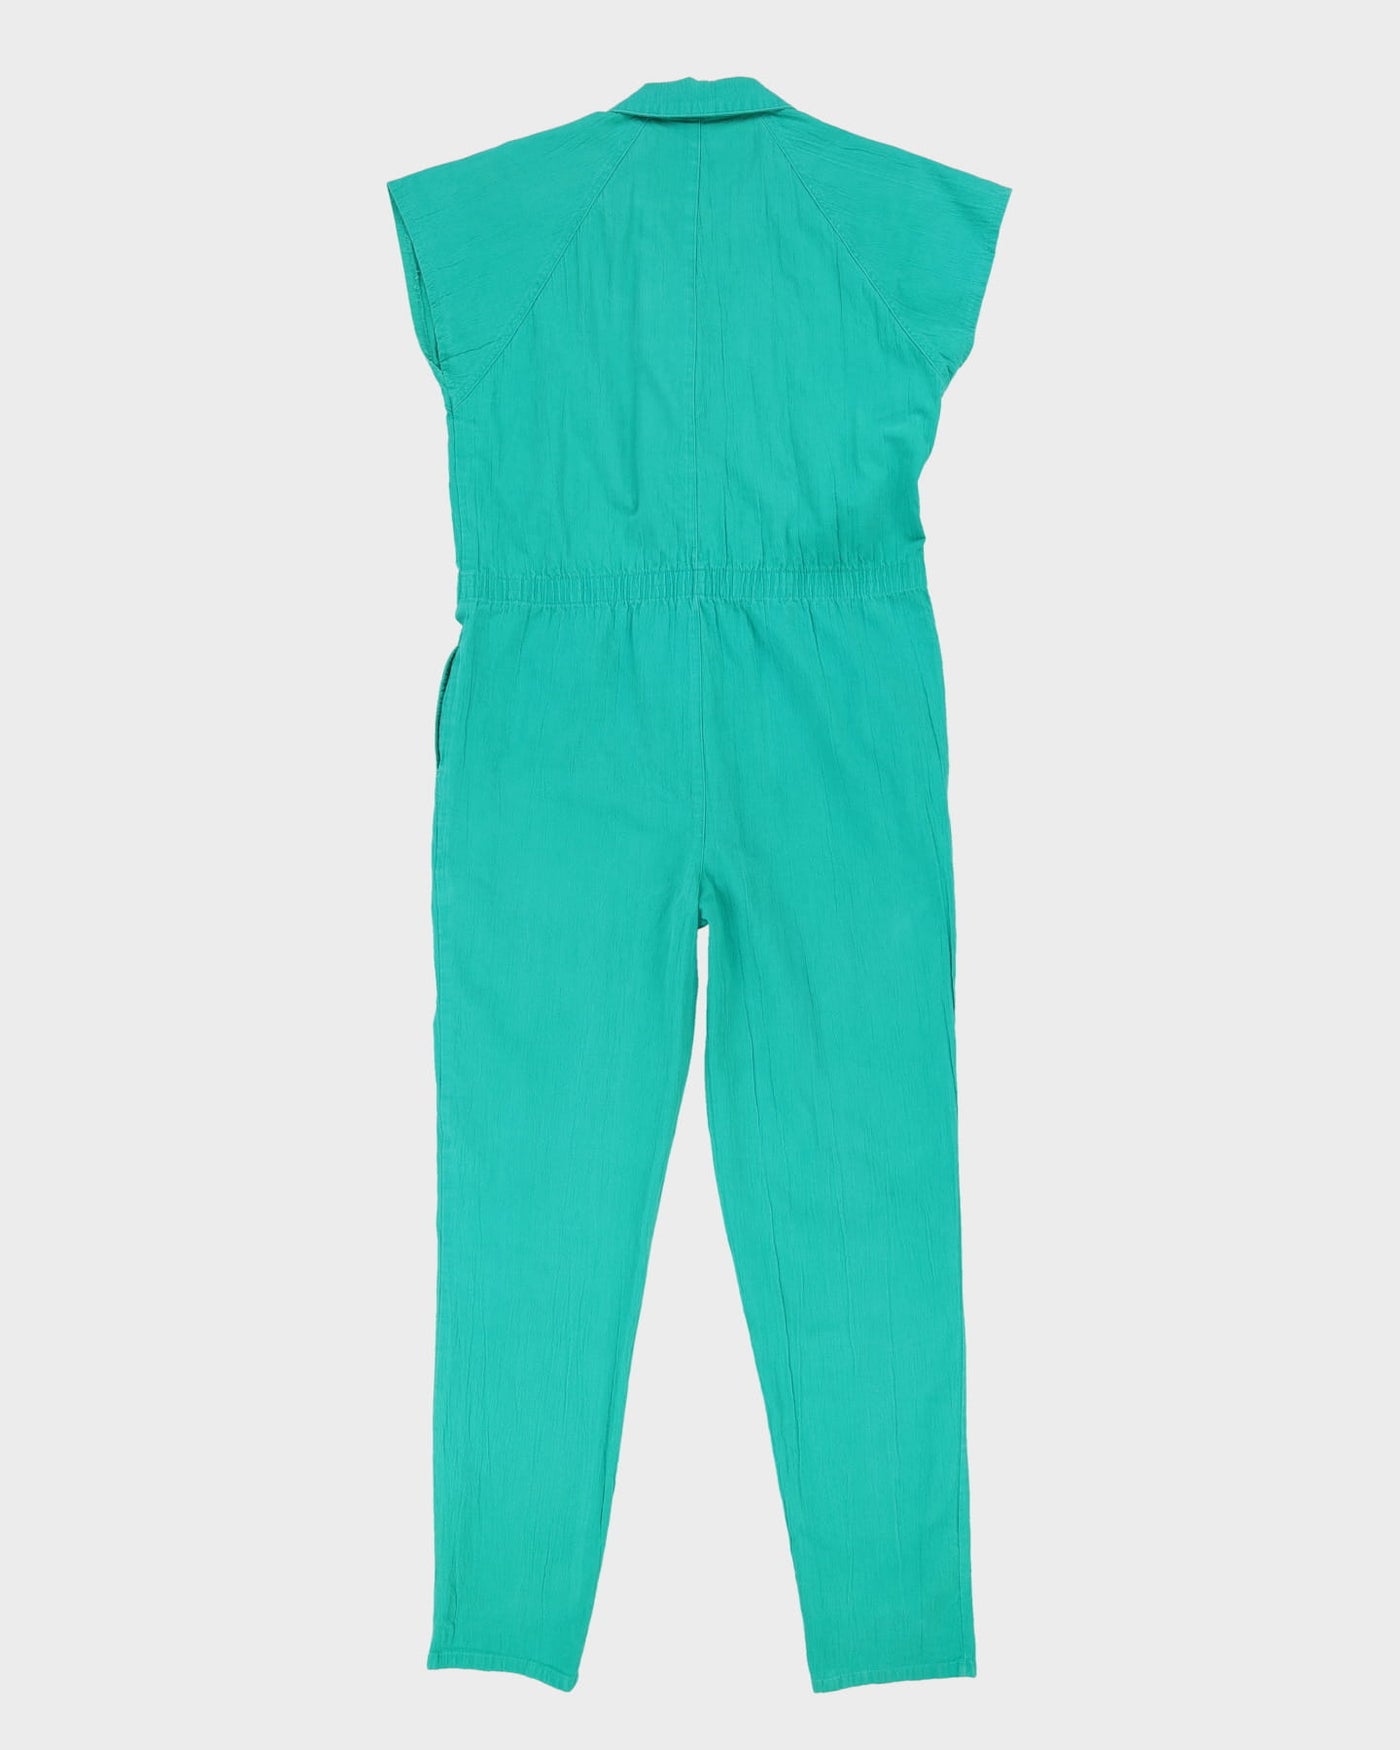 1990s Green Cotton Jumpsuit - M / L